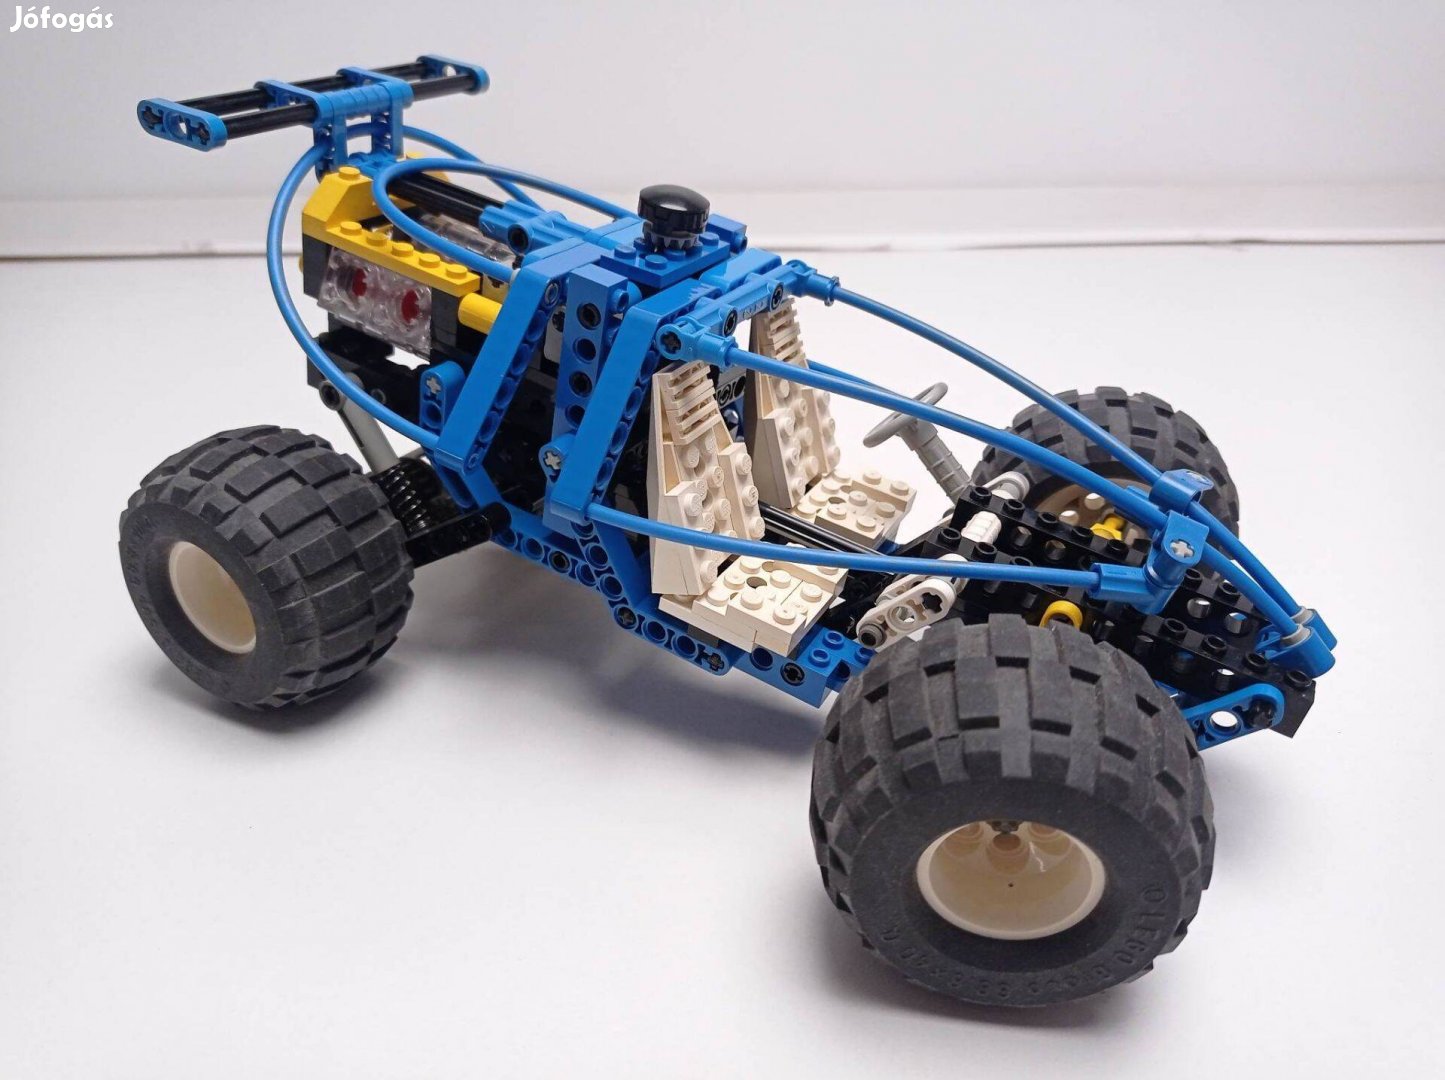 LEGO Technic 8437 Future Car